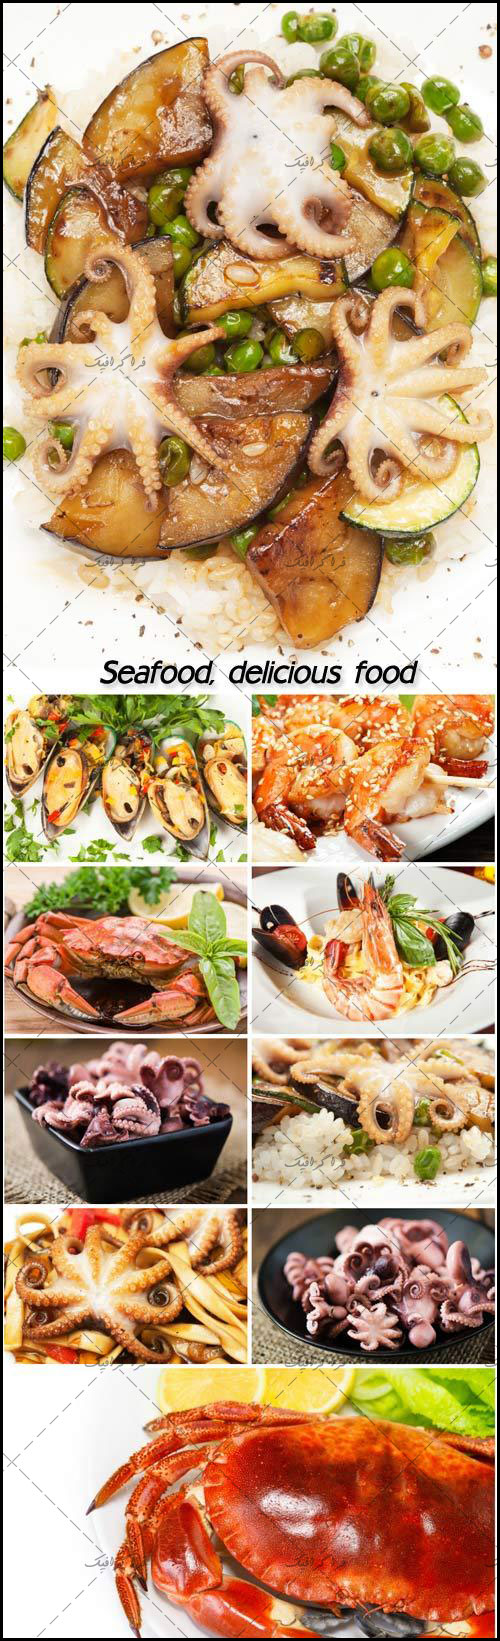 تصاویر استوک غذا های دریایی - شماره 4